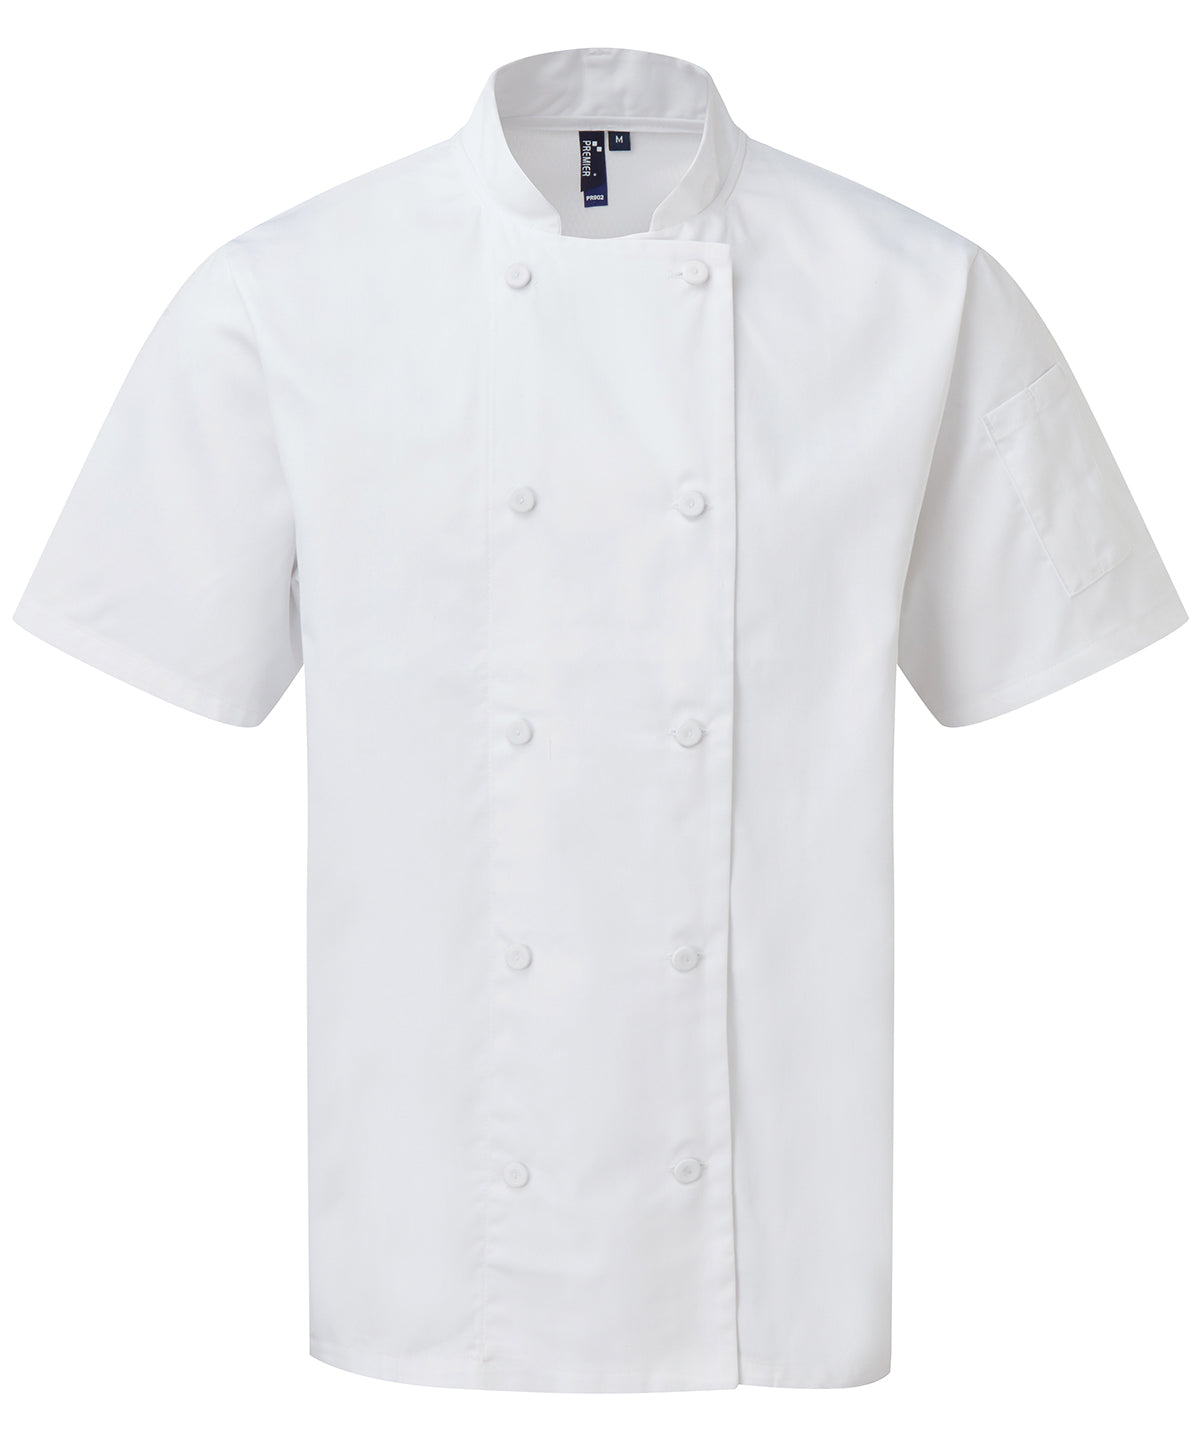 Kokkajakkar - Chefs Coolchecker® Short Sleeve Jacket